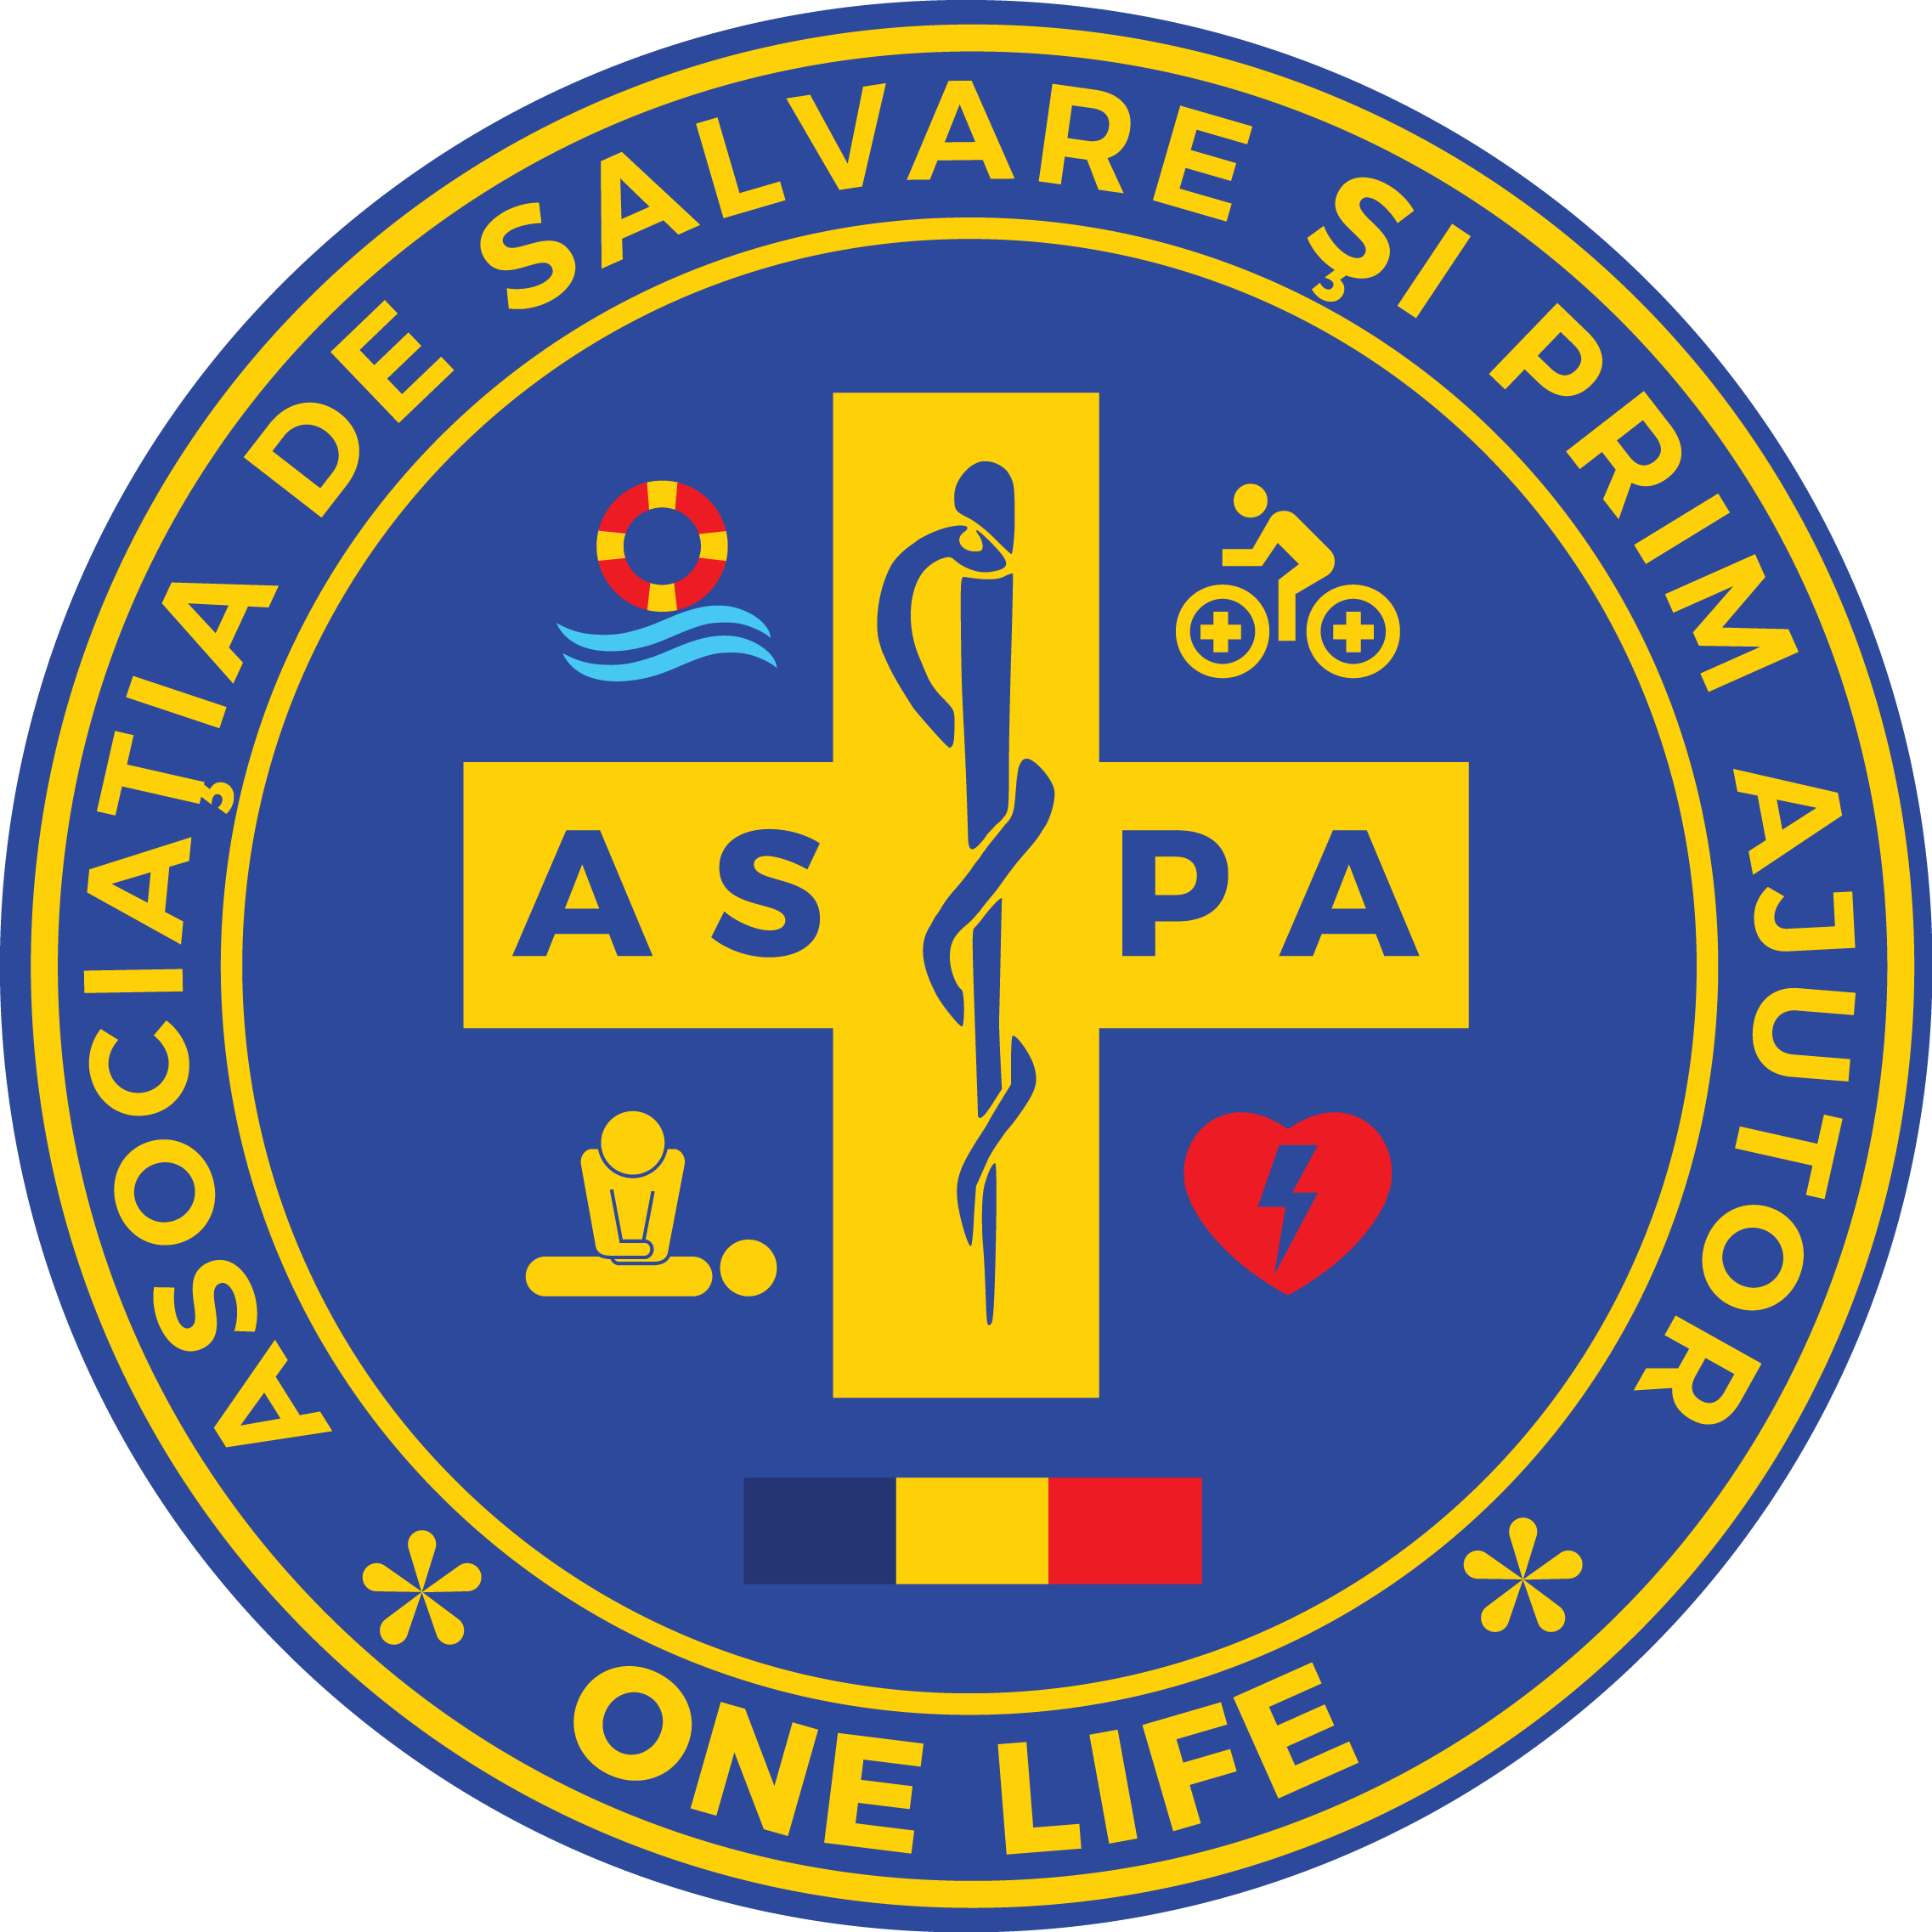 Asociatia de Salvare Si Prim Ajutor “One Life”, Arad, Romania, 310028